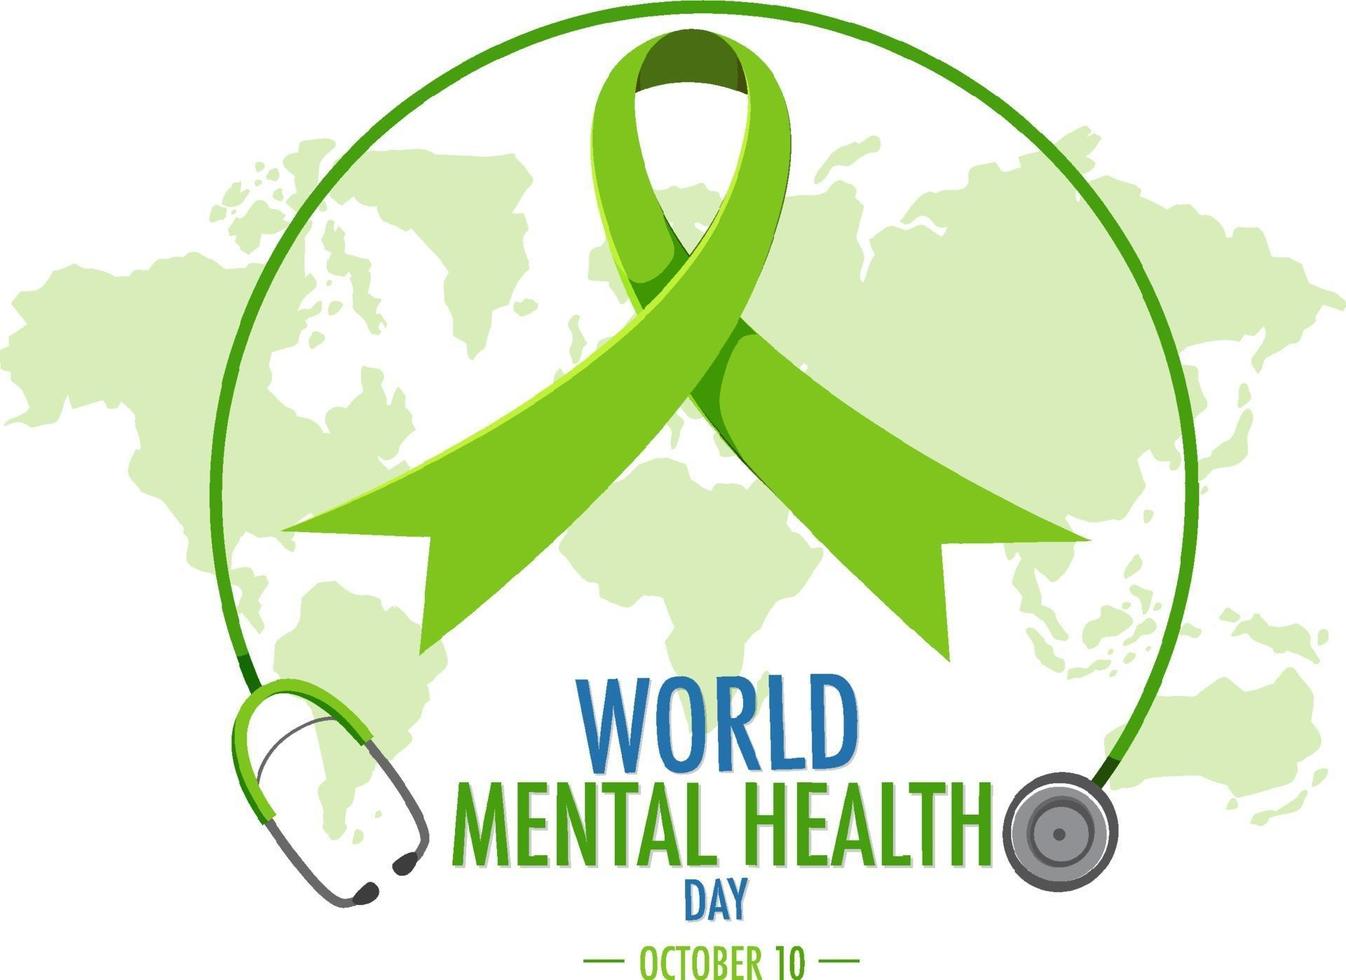 banner ou logotipo do dia mundial da saúde mental isolado no fundo branco vetor